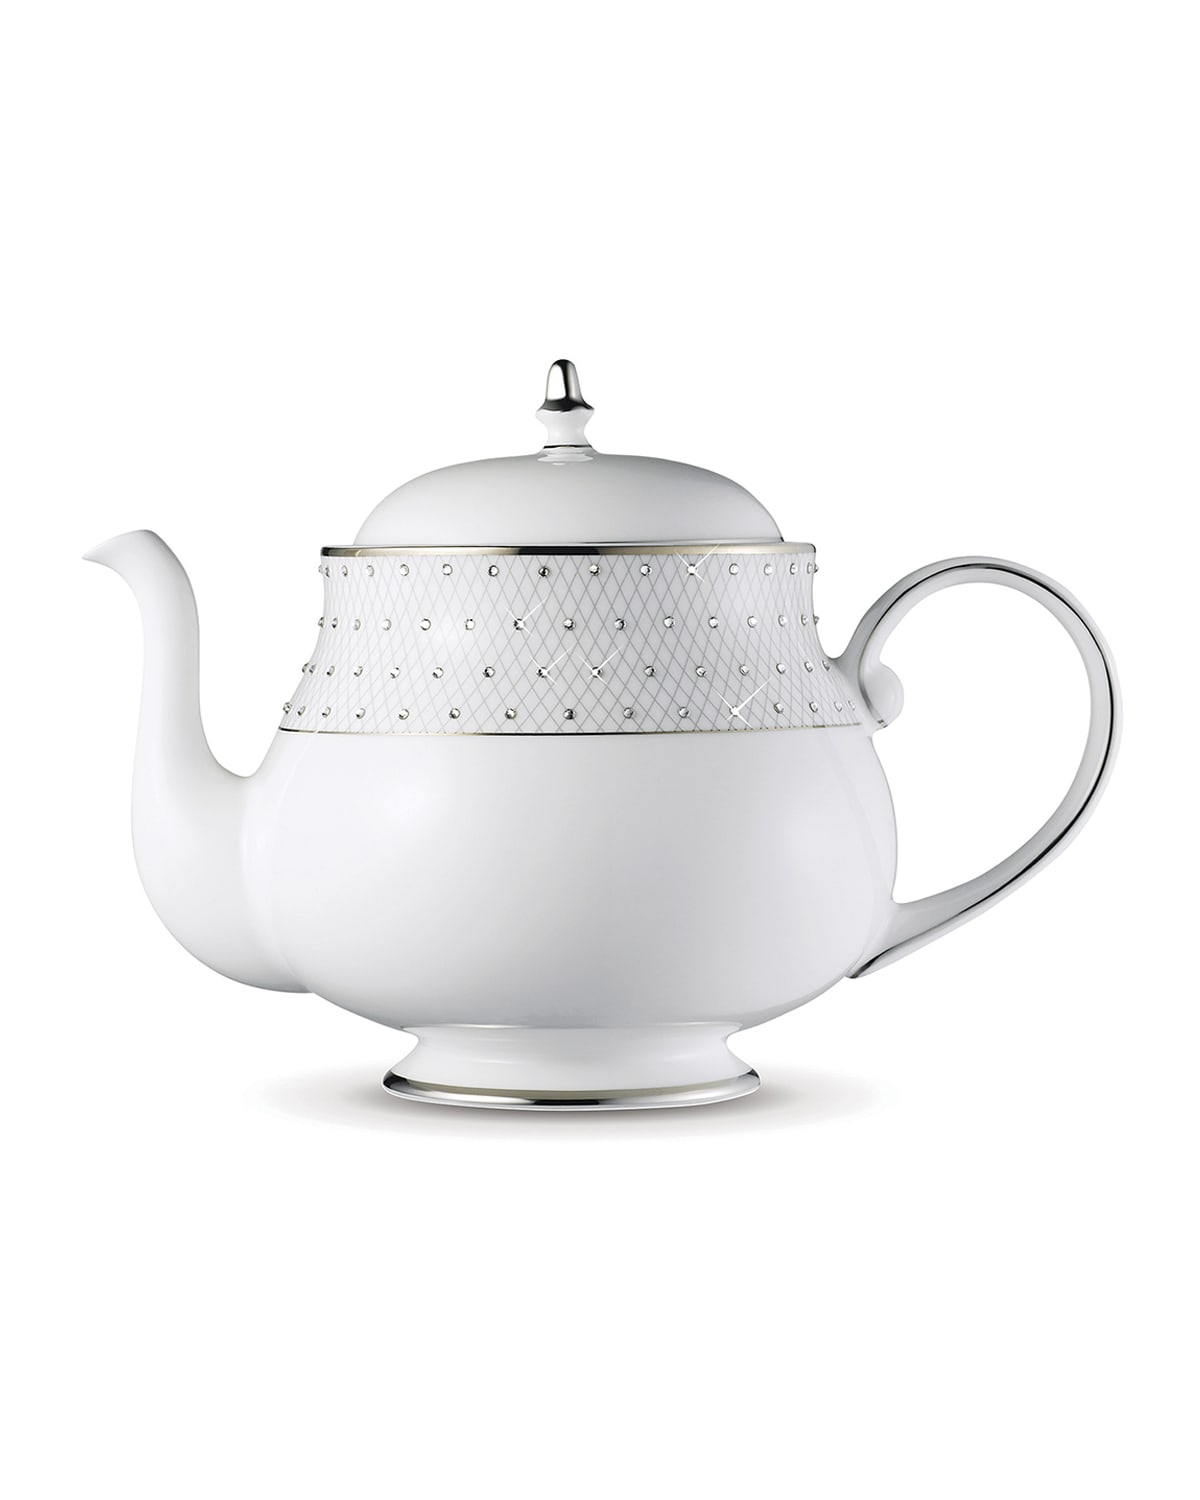 Prouna Princess Teapot In Platinum